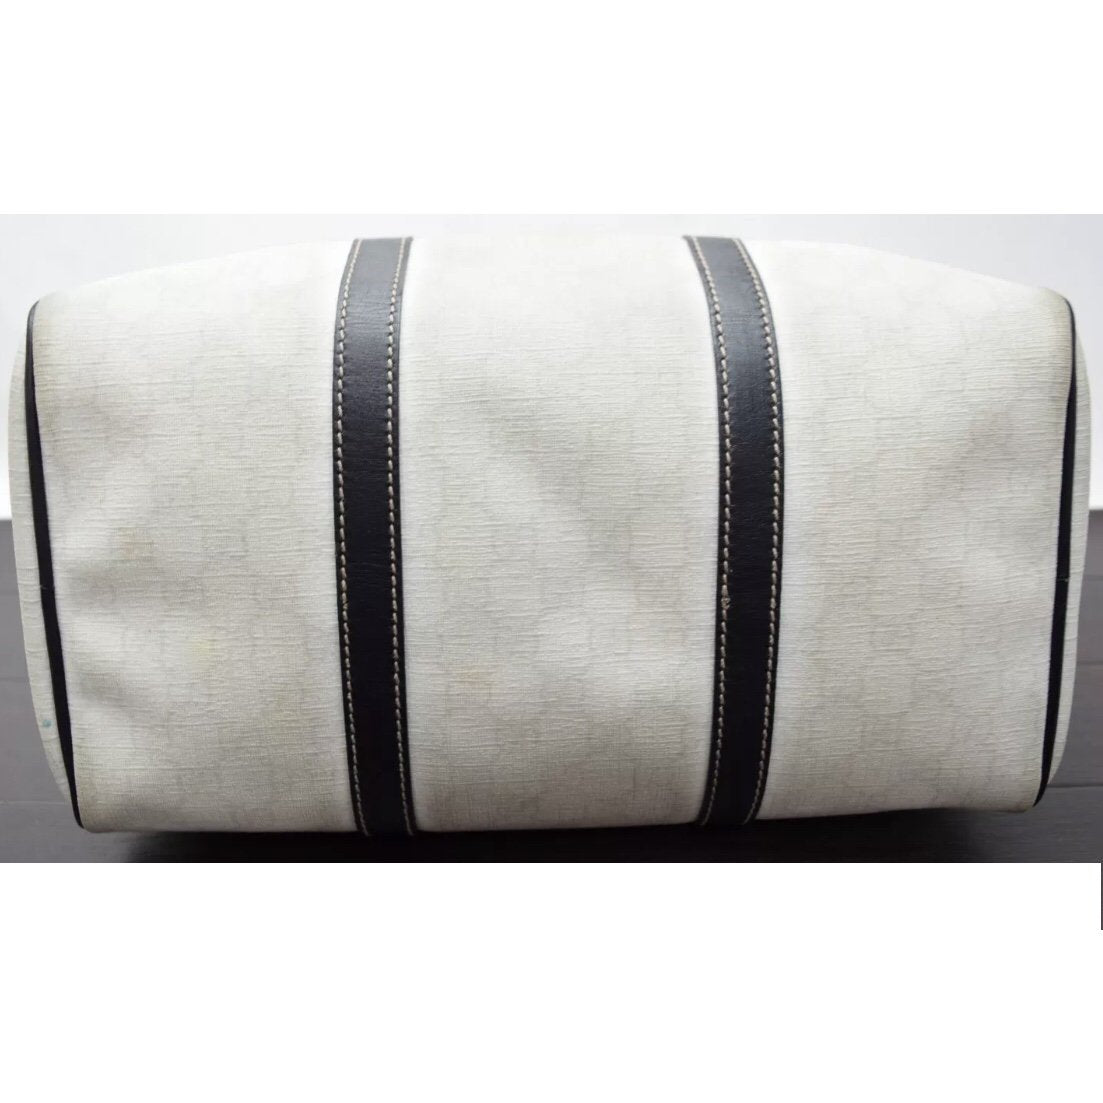 Gucci Exclusive Limited Edition Joy White & Black Supreme Canvas Boston Bag